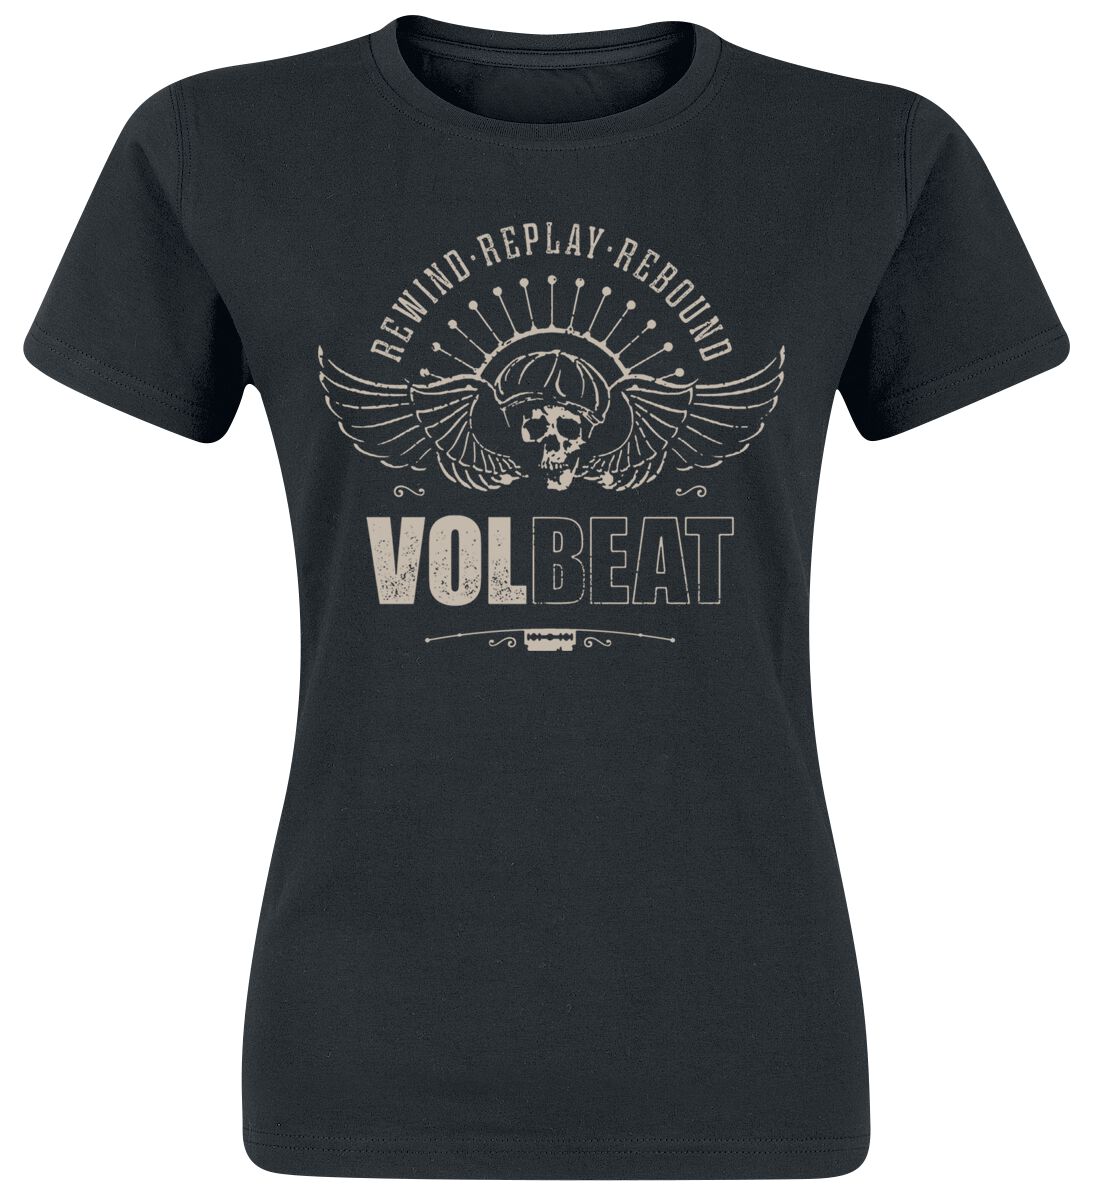 Volbeat T-Shirt - Skullwing - Rewind, Replay, Rebound - S bis 3XL - für Damen - Größe S - schwarz  - EMP exklusives Merchandise!